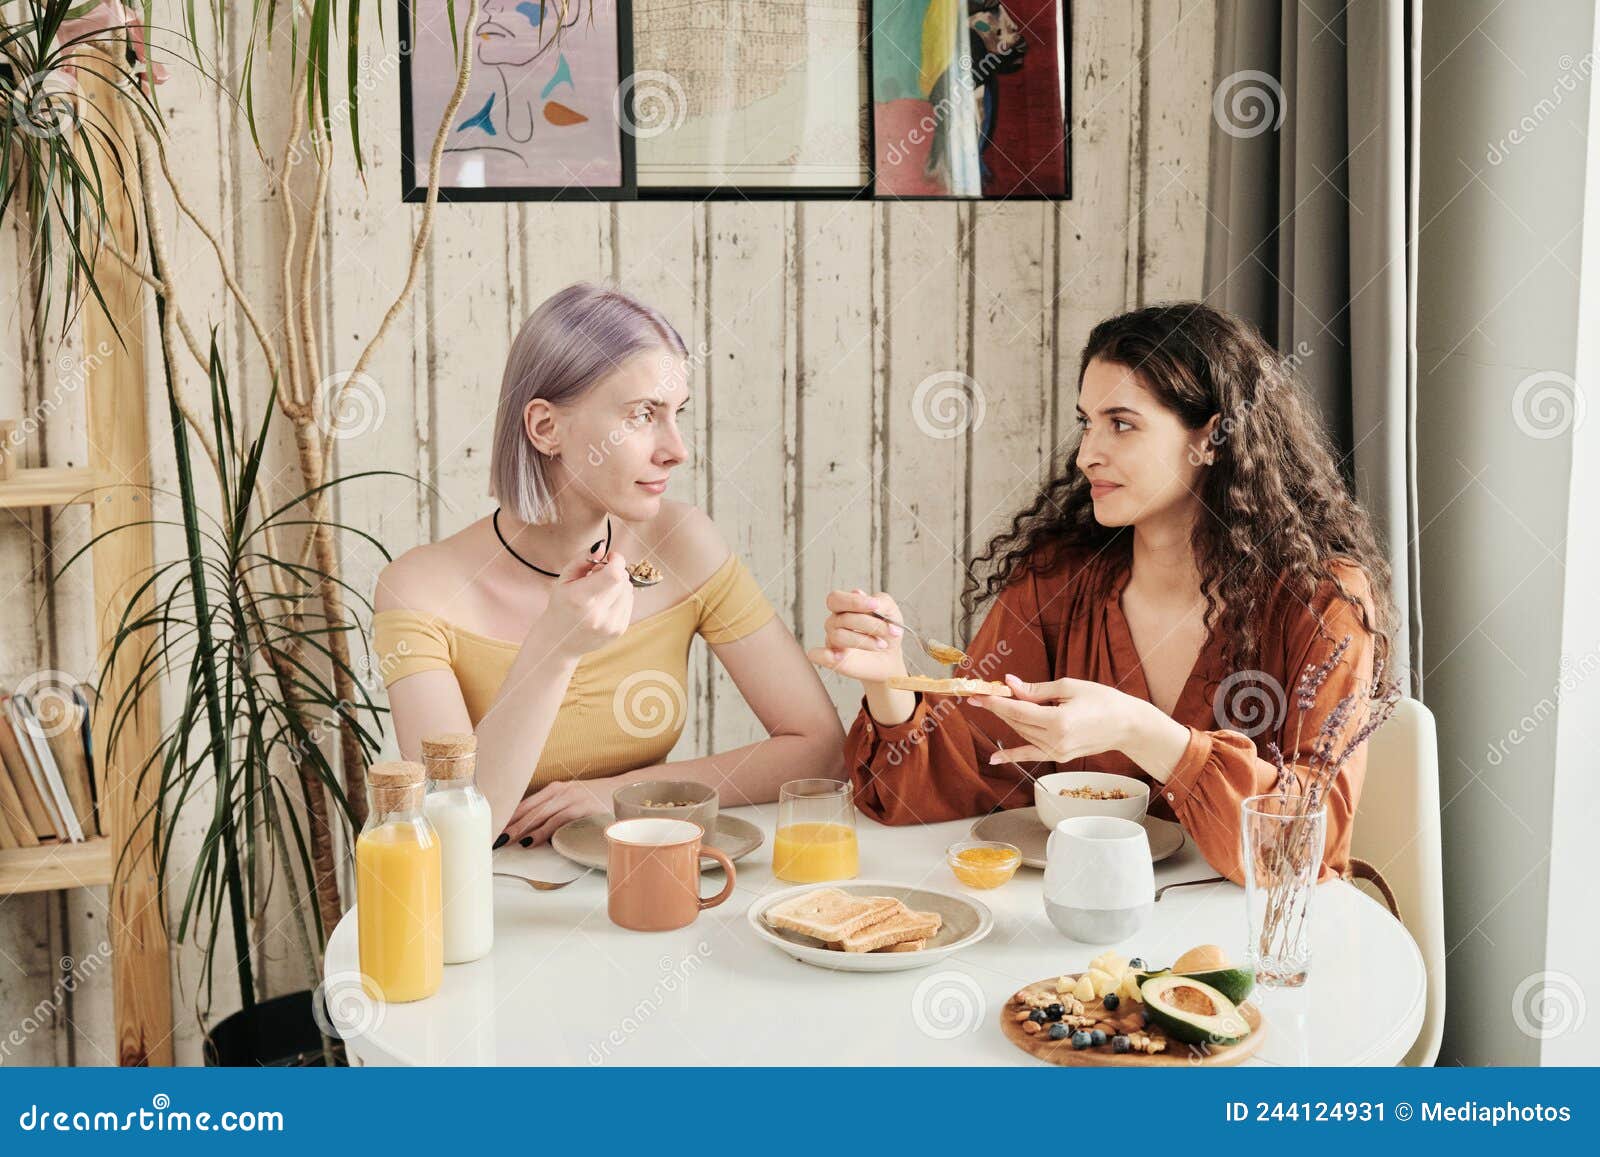 Lesbianas Comiendo Tostadas Con Mermelada Imagen De Archivo Imagen De